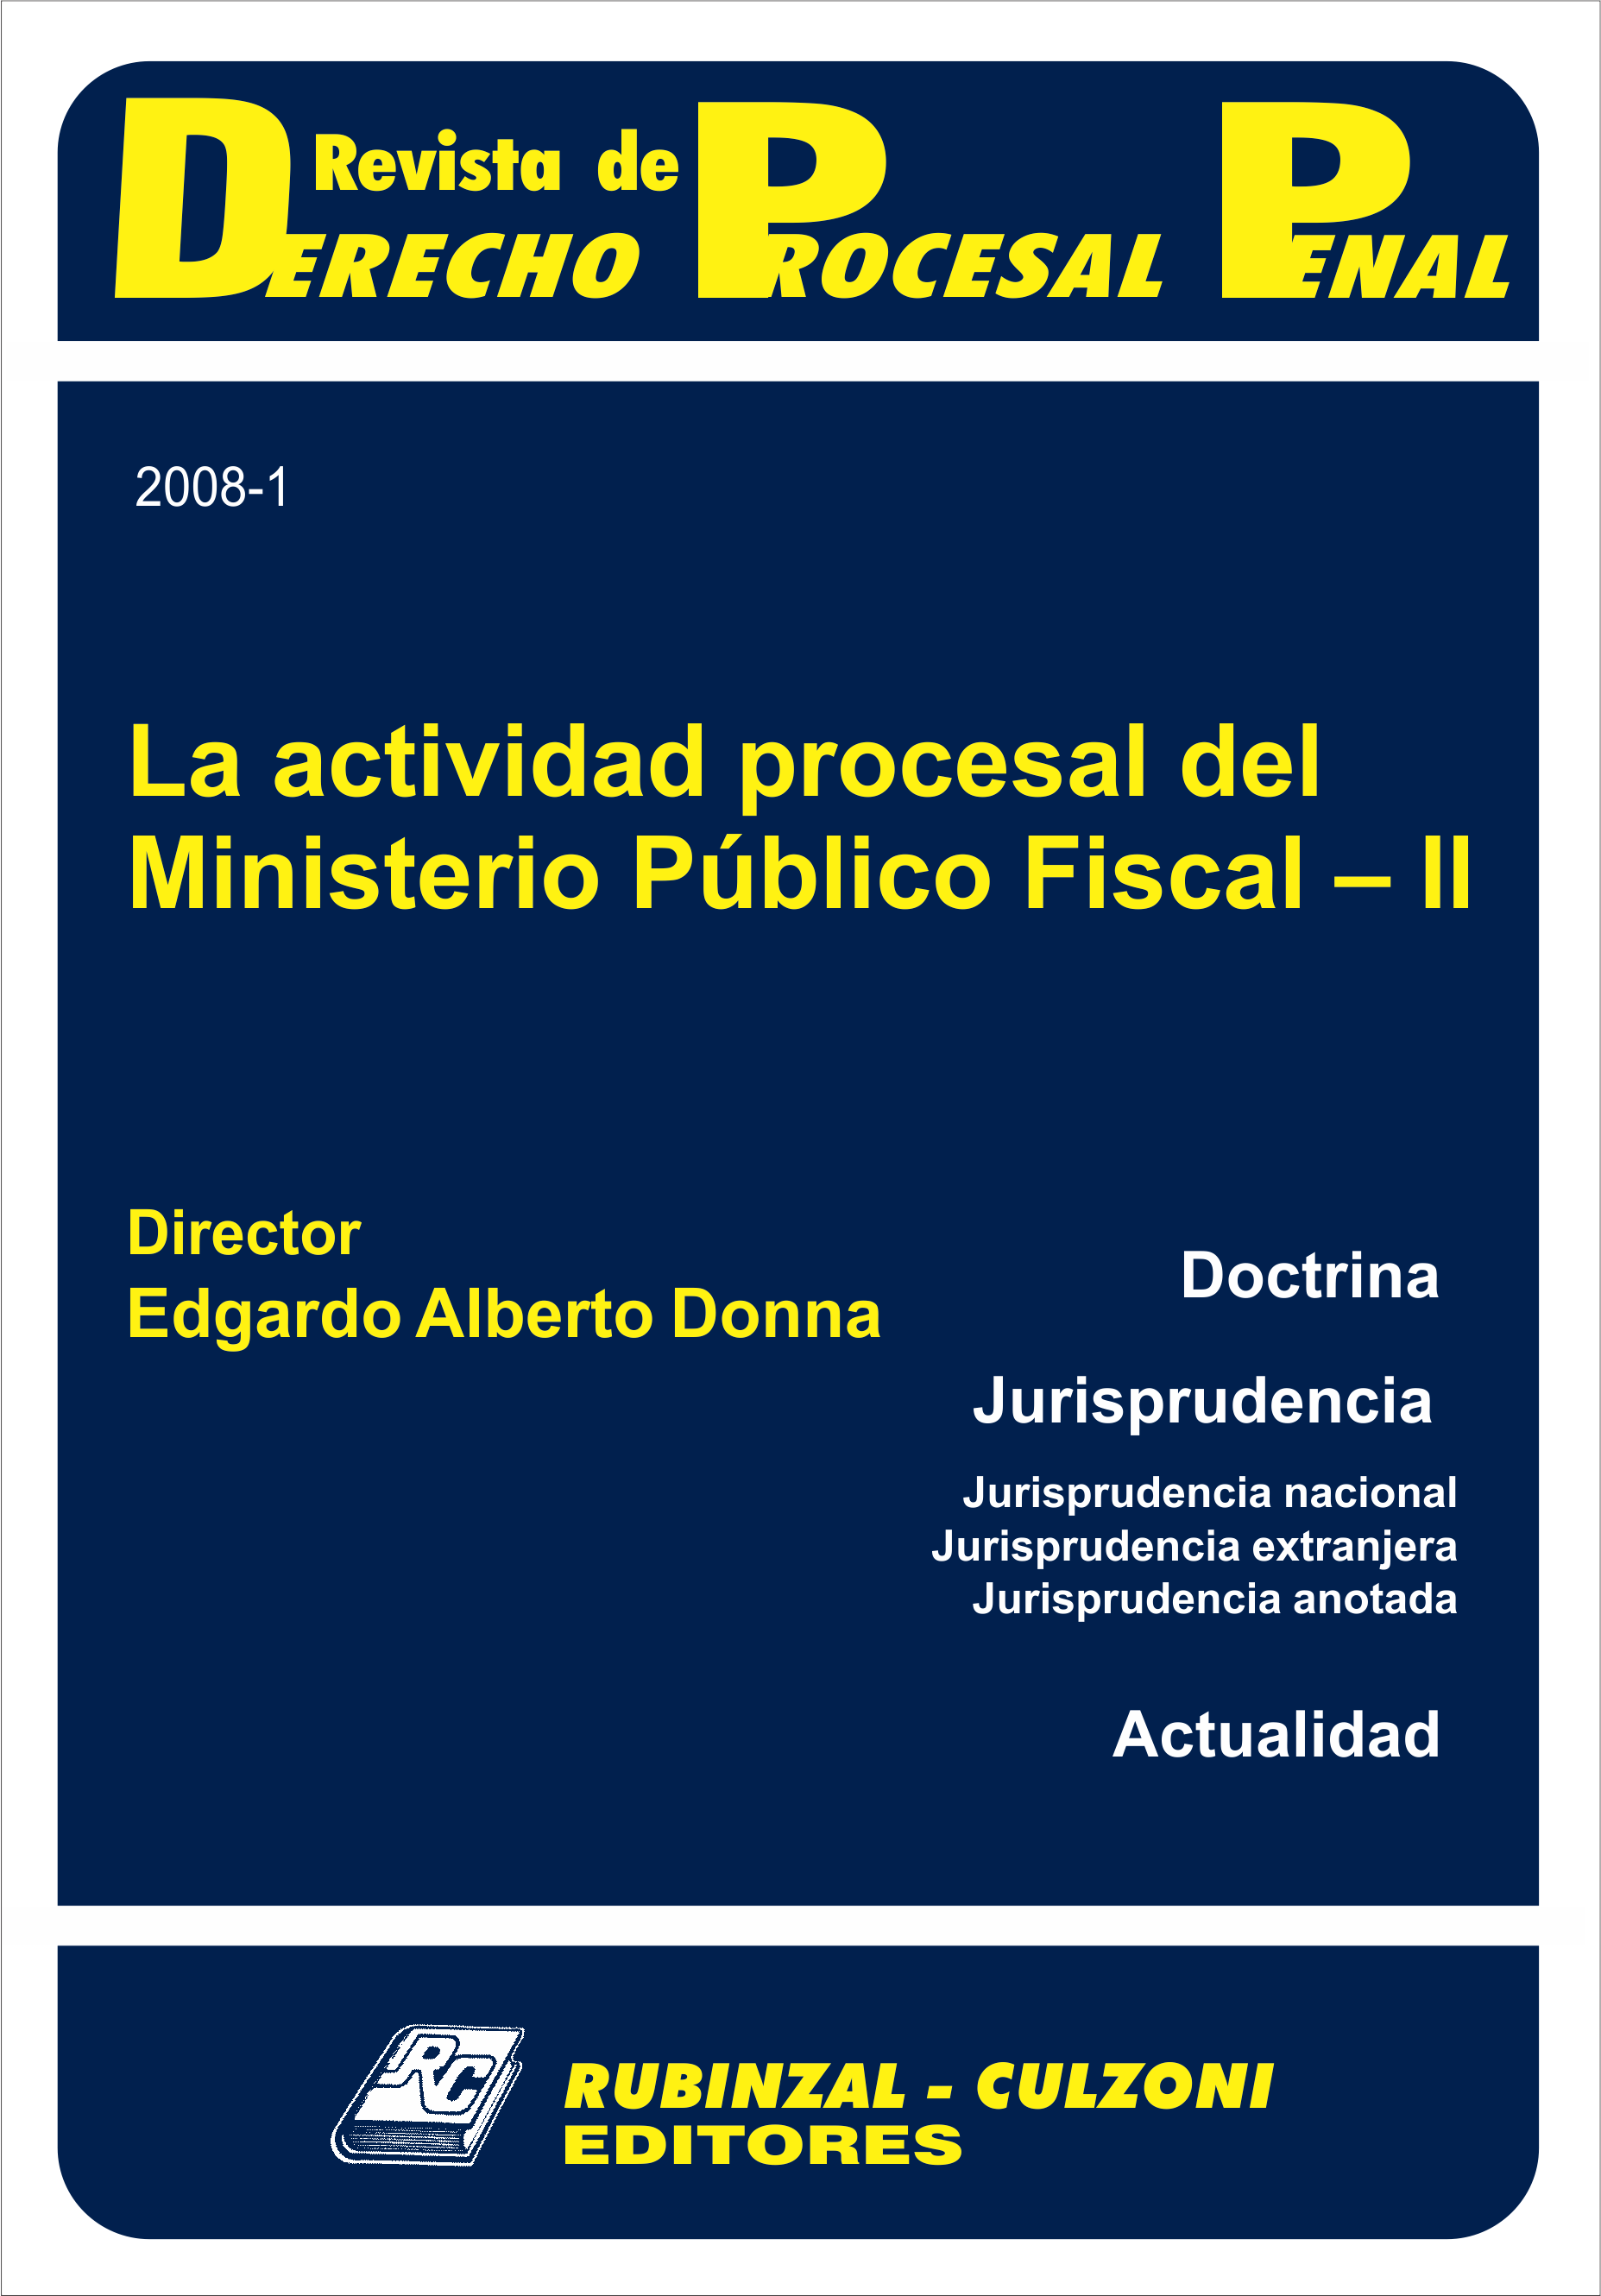 Revista de Derecho Procesal Penal - La actividad procesal del Ministerio Público Fiscal - II.